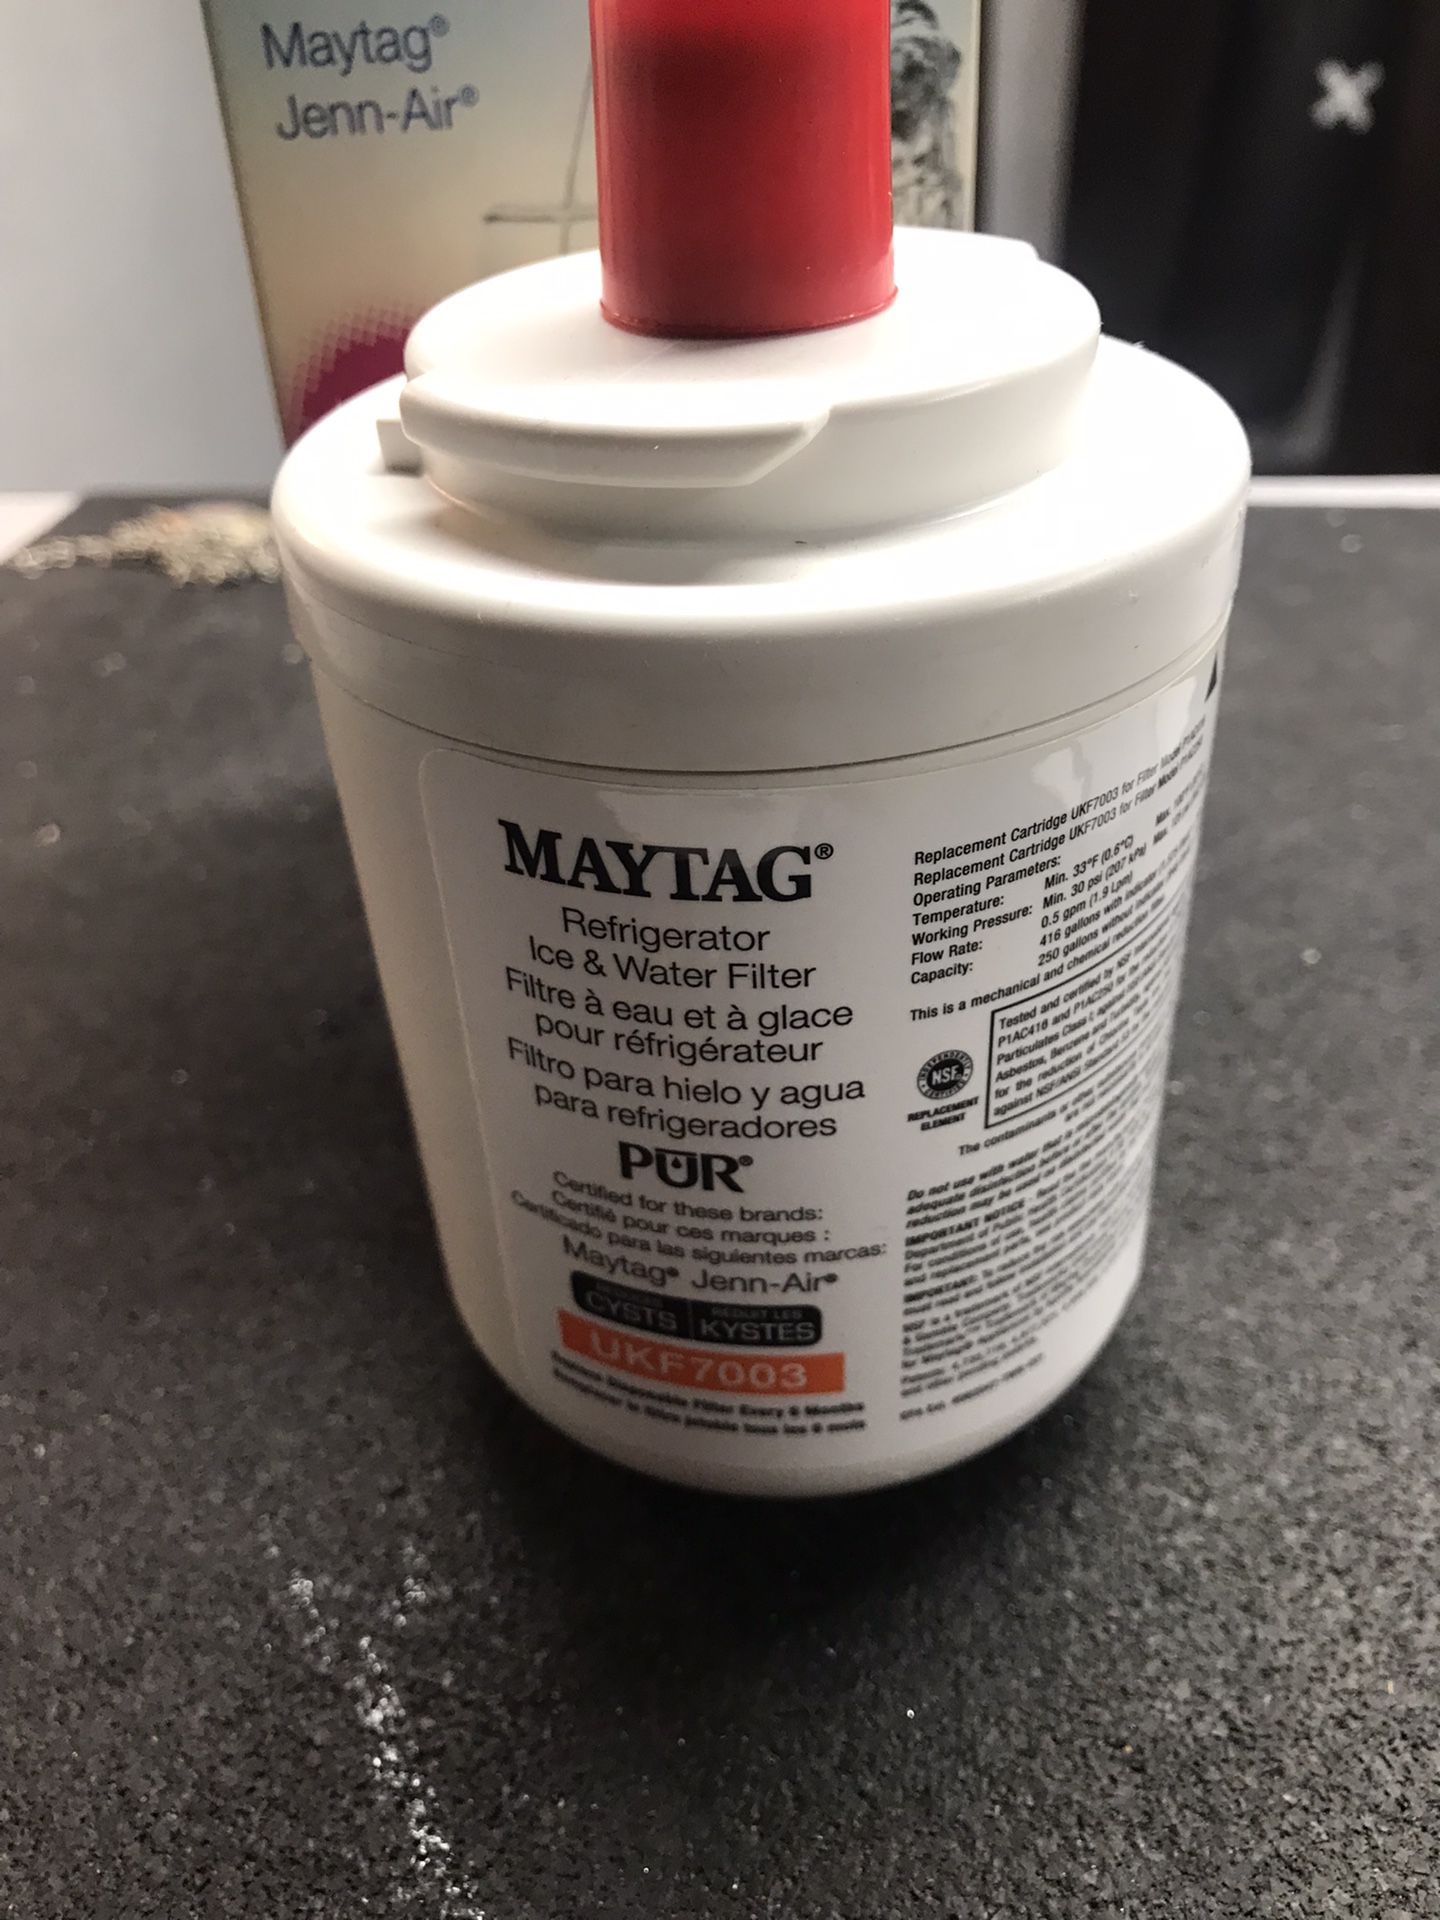 Maytag refrigerator water filter